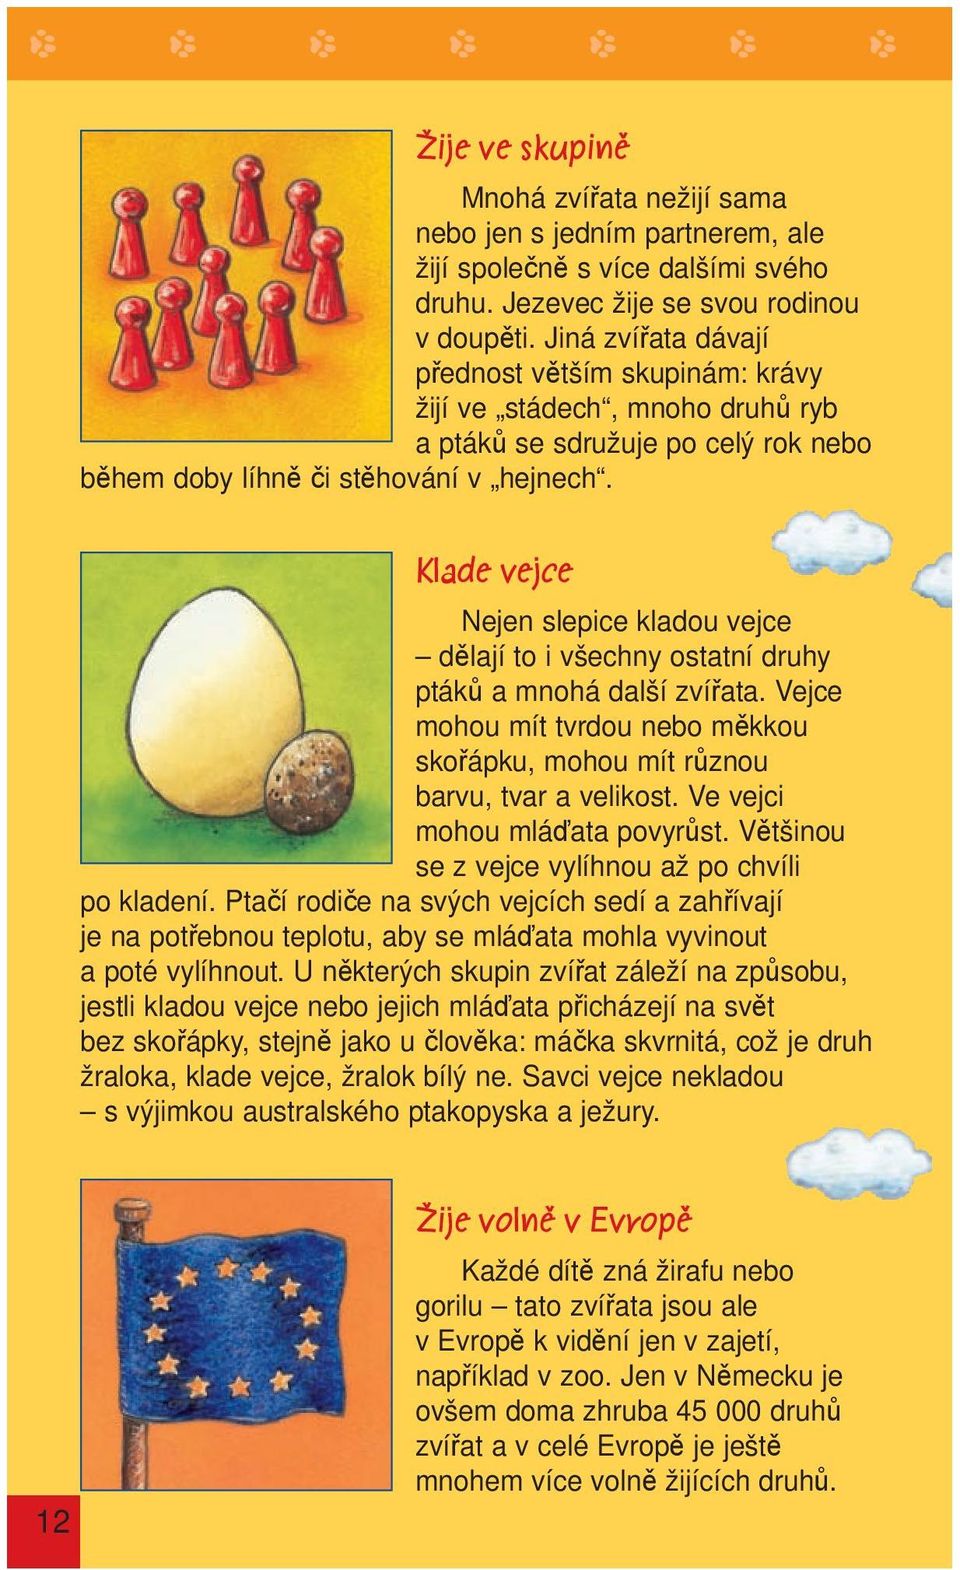 Klade vejce Nejen slepice kladou vejce dělají to i všechny ostatní druhy ptáků a mnohá další zvířata. Vejce mohou mít tvrdou nebo měkkou skořápku, mohou mít různou barvu, tvar a velikost.